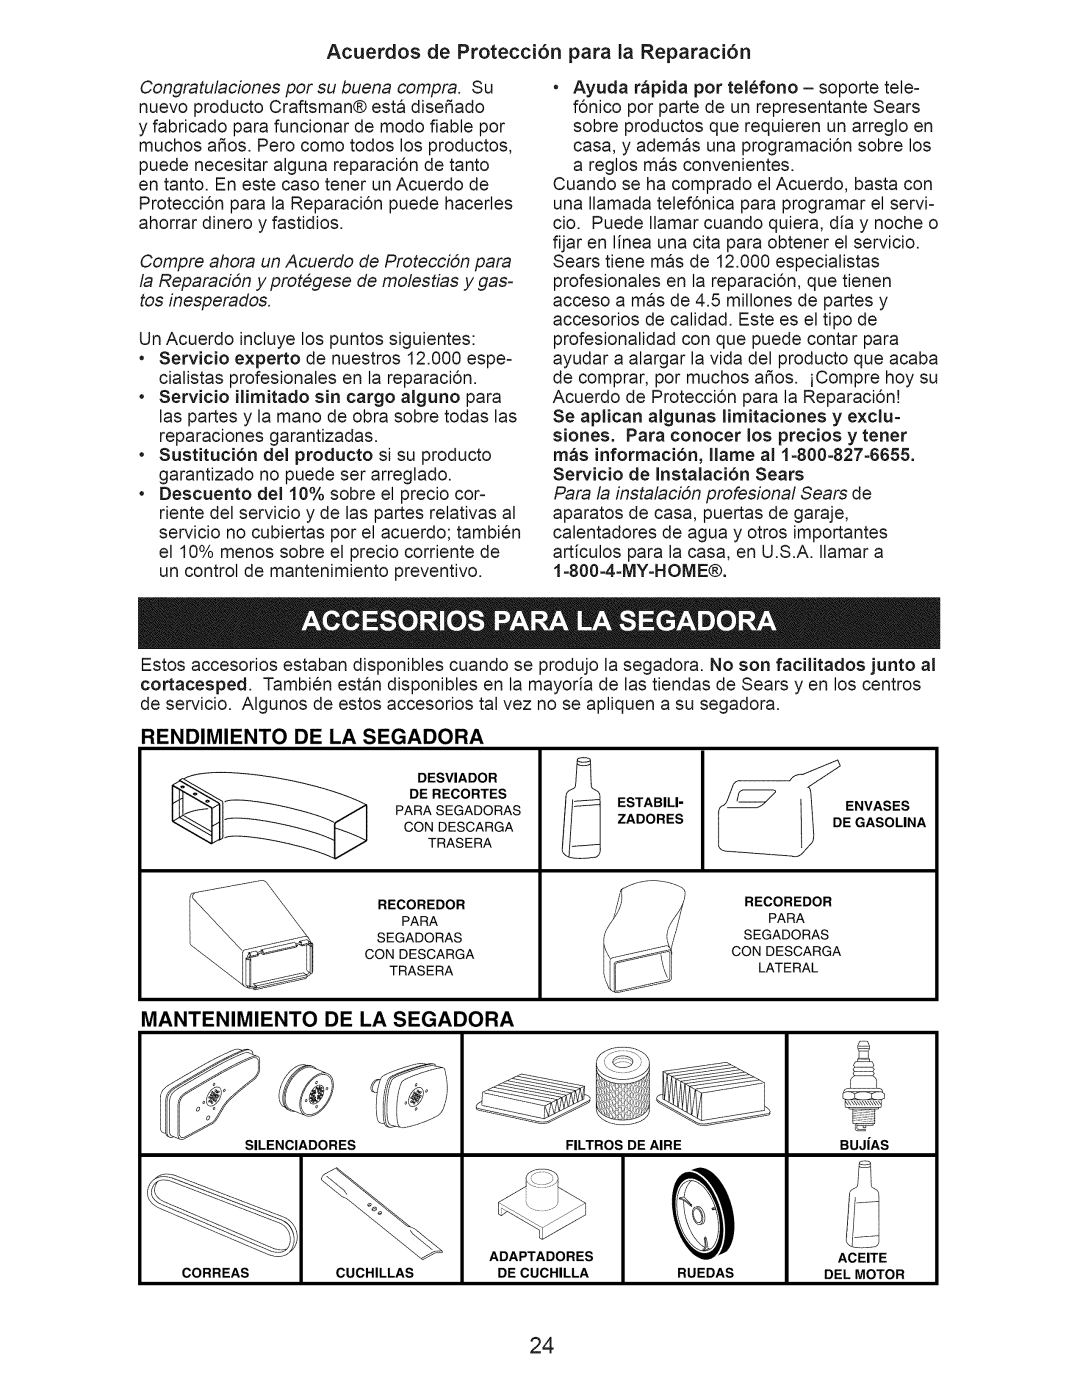 Craftsman 917.374363 Acuerdos de Protecci6n para la Reparaci6n, Rendimiento De La Segadora, Mantenimiento De La Segadora 